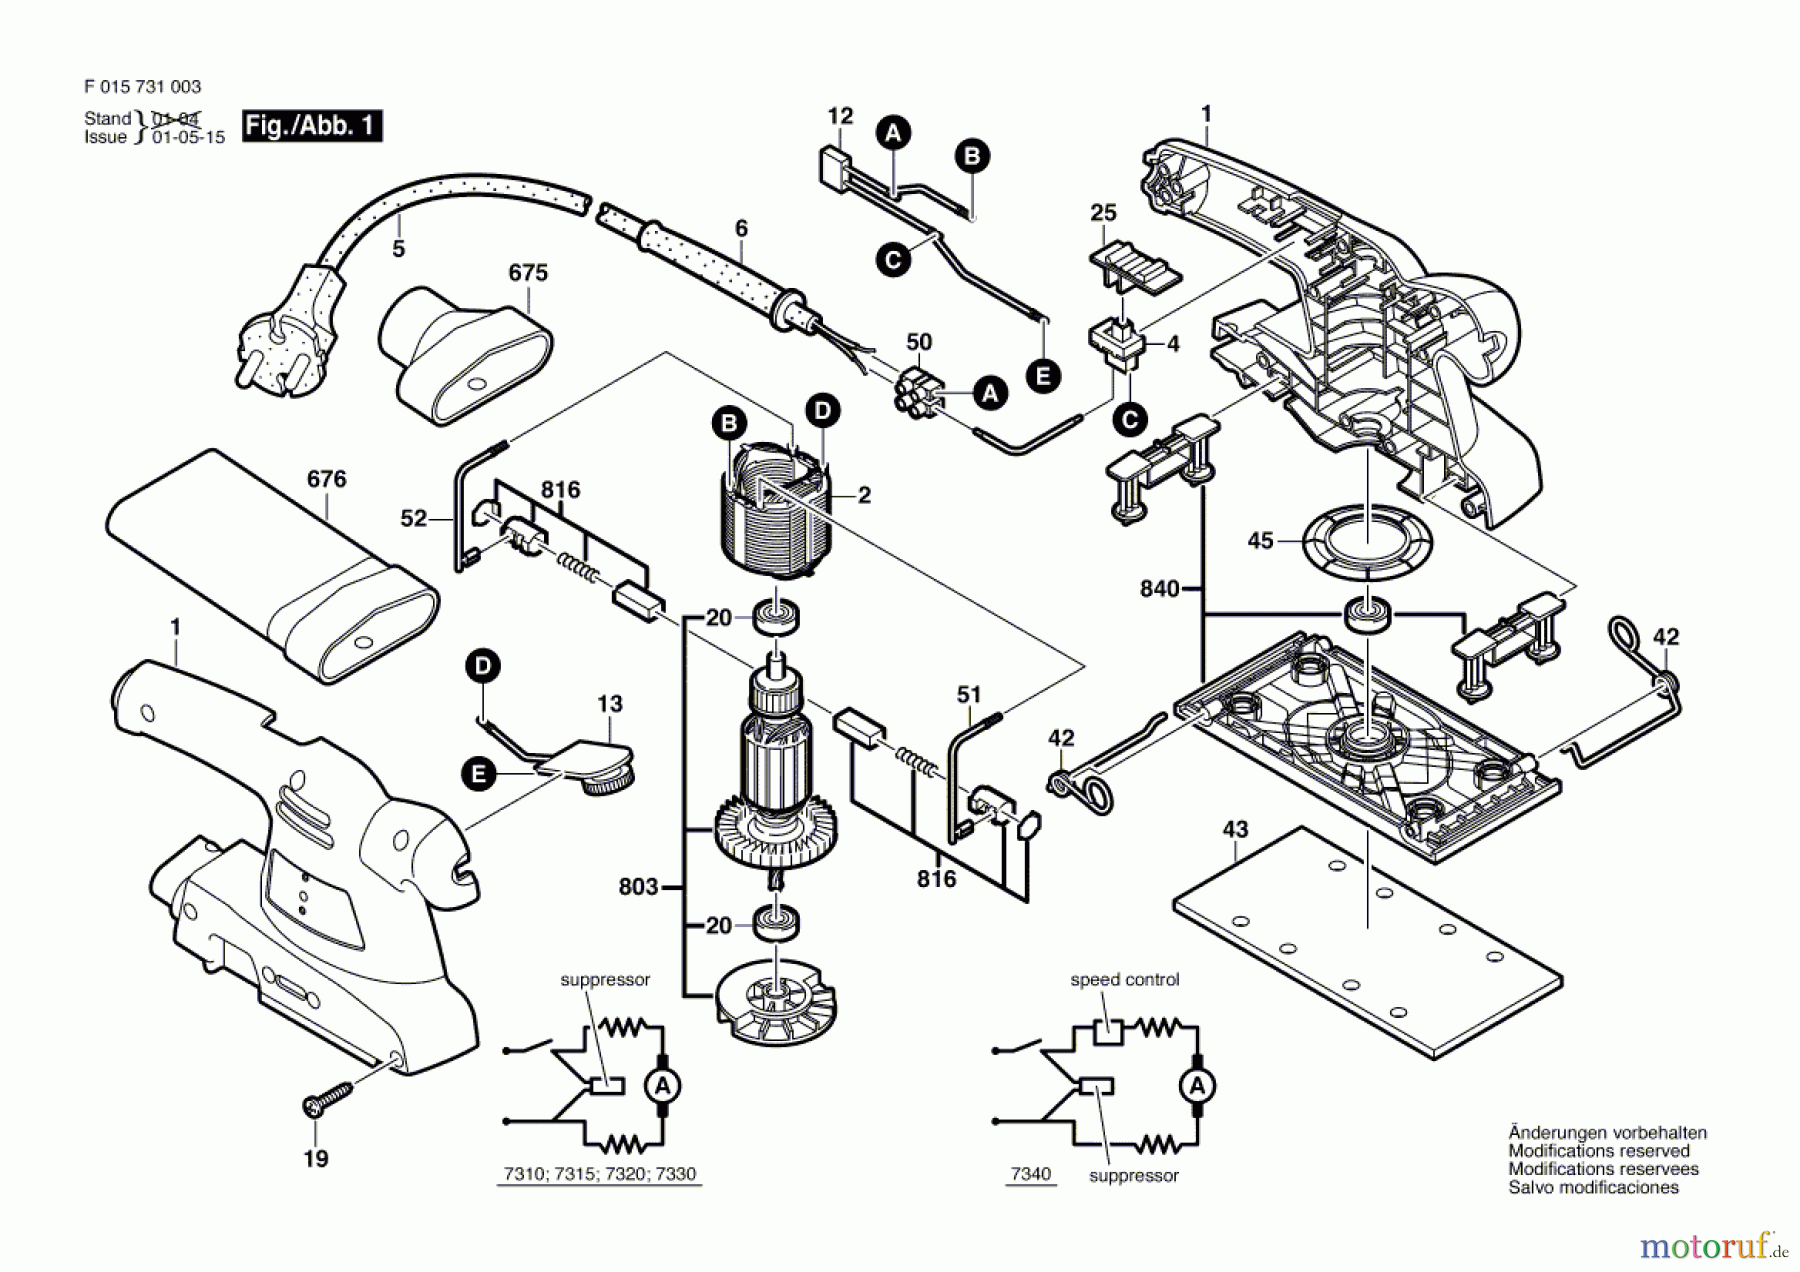  Bosch Werkzeug Schwingschleifer 7330 Seite 1